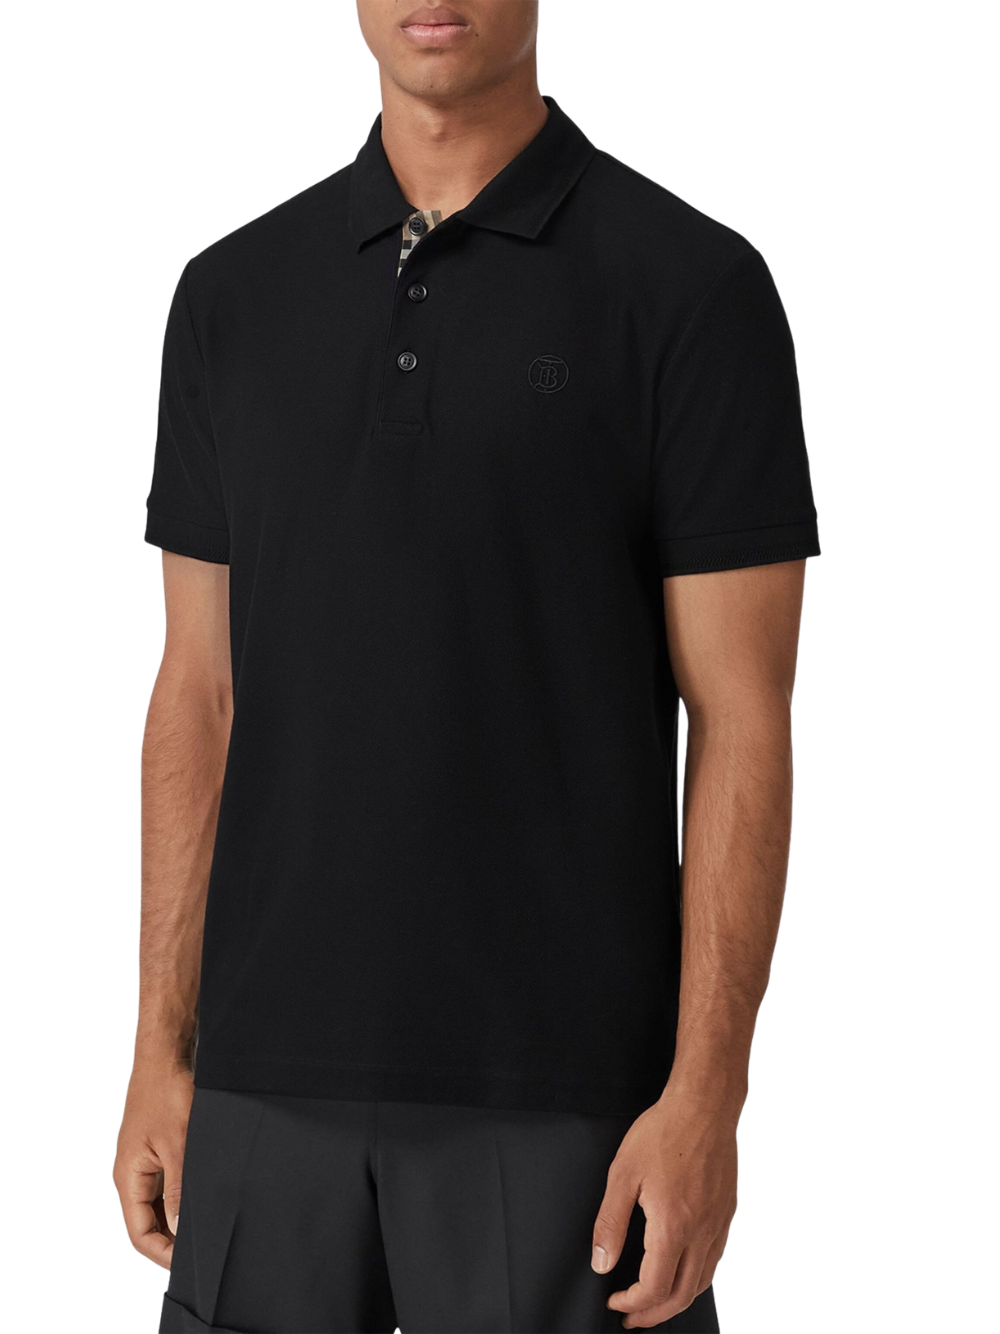 Burberry Monogram Polo Shirt Black 805528